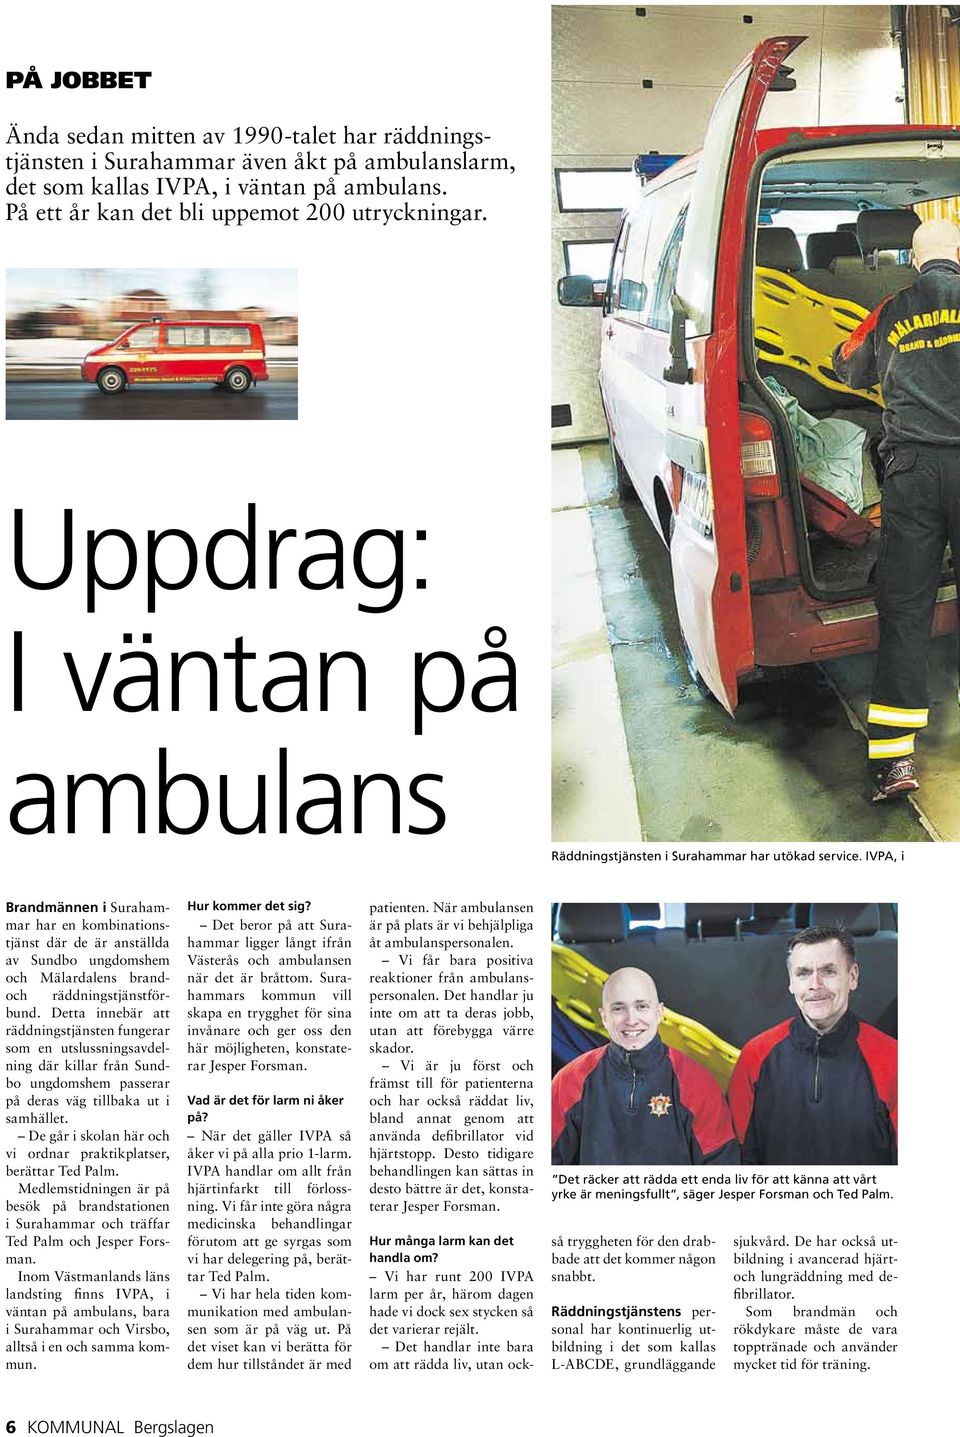 IVPA, i Brandmännen i Surahammar har en kombinationstjänst där de är anställda av Sundbo ungdomshem och Mälardalens brandoch räddningstjänstförbund.